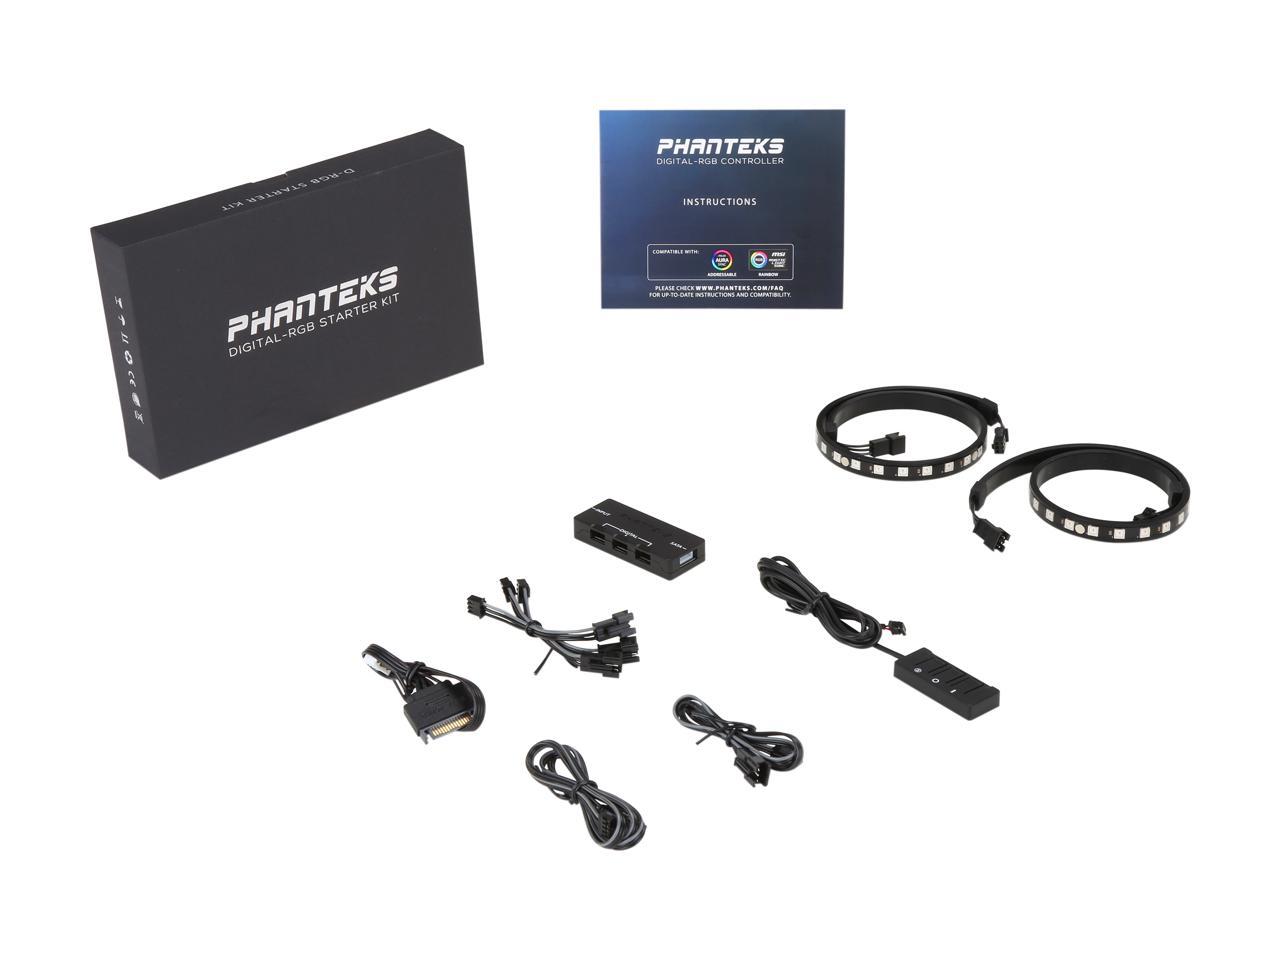 Phanteks Gaming Bilgisayar Digital RGB LED Başlangıç Kiti-HUB